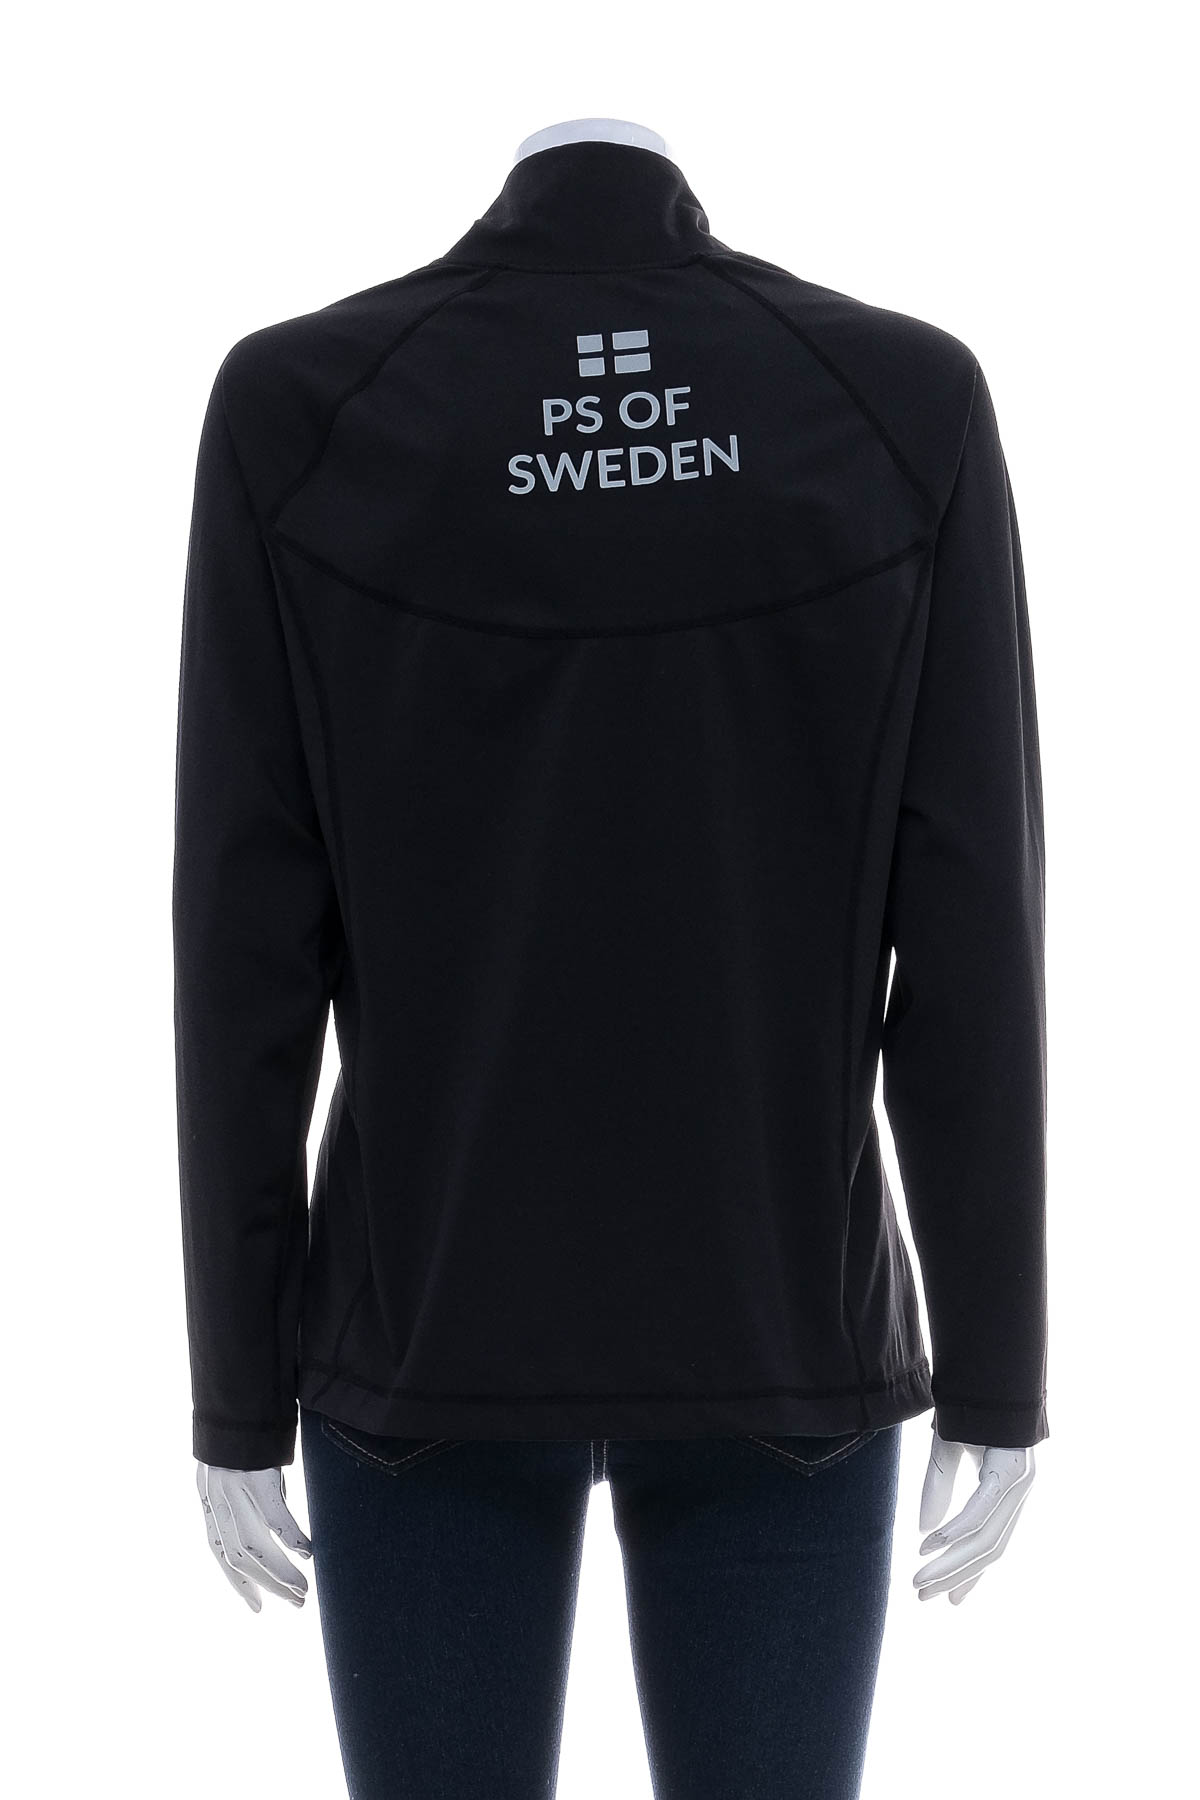 Γυναικεία αθλητική μπλούζα - PS of Sweden - 1